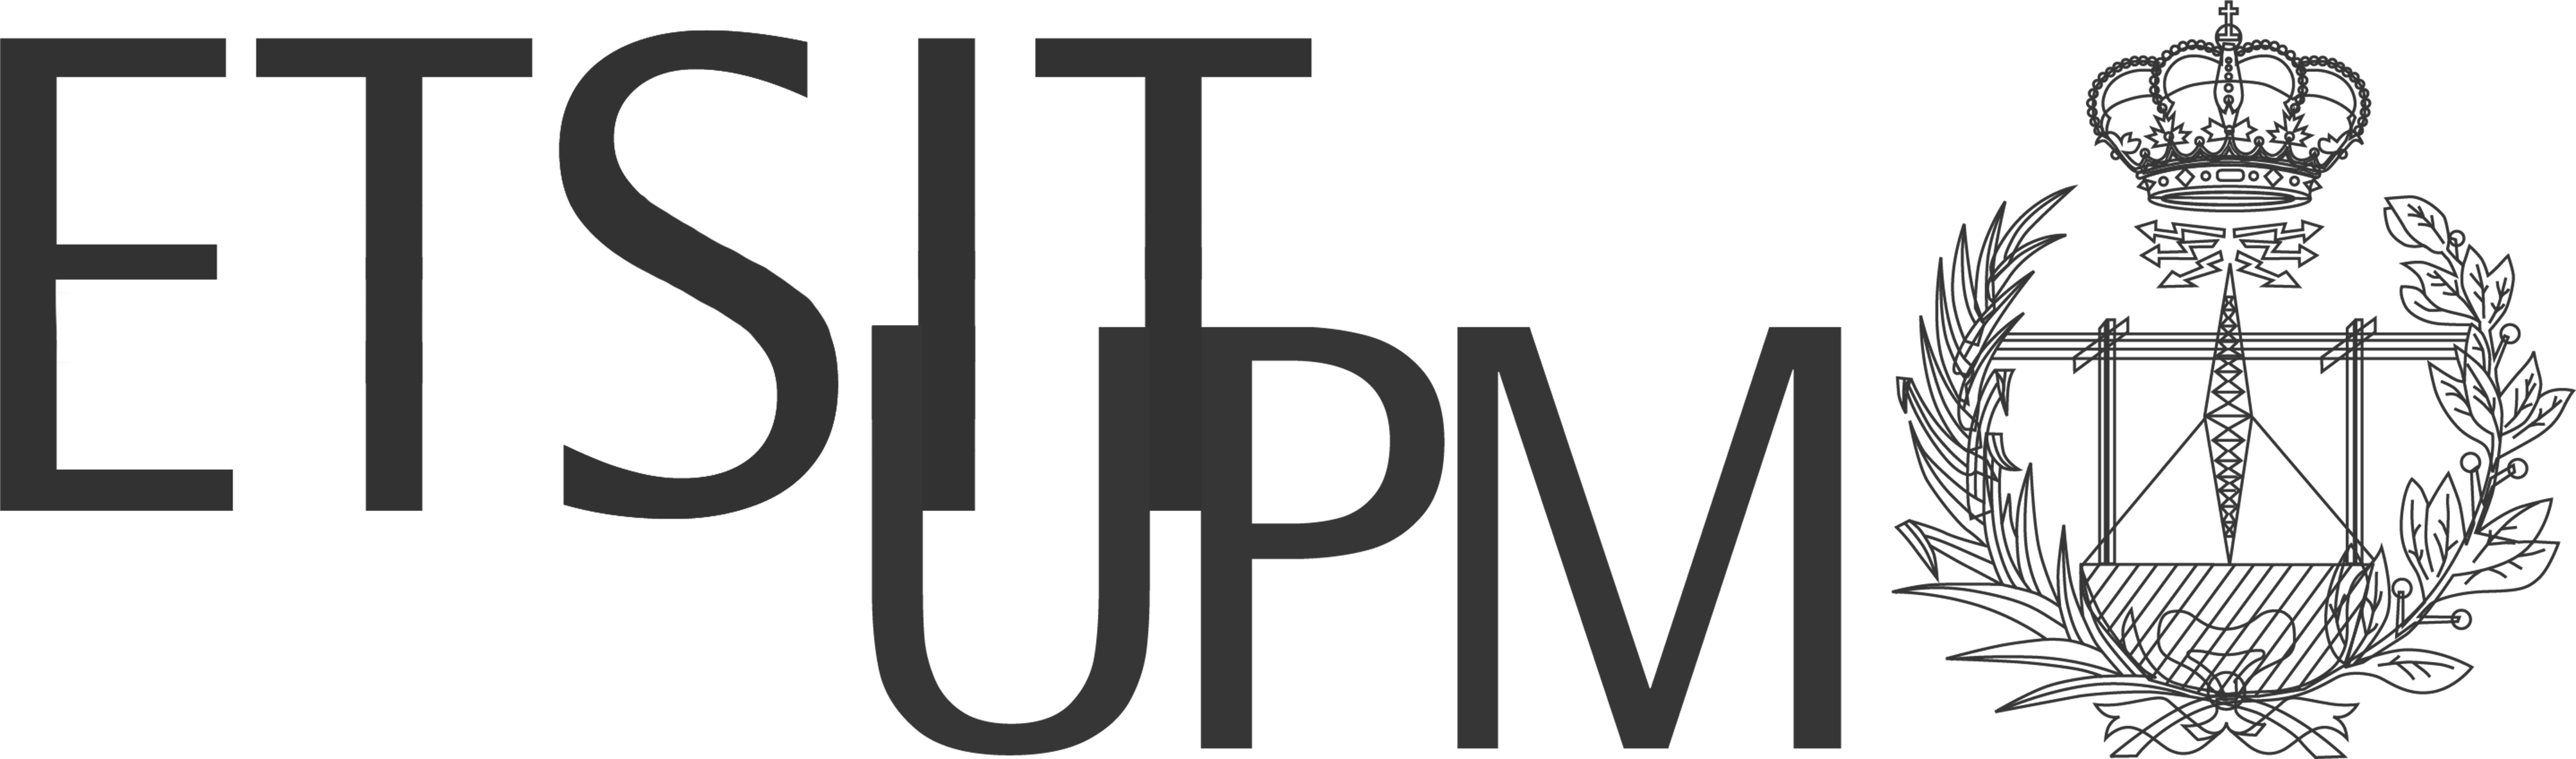 upm_logo